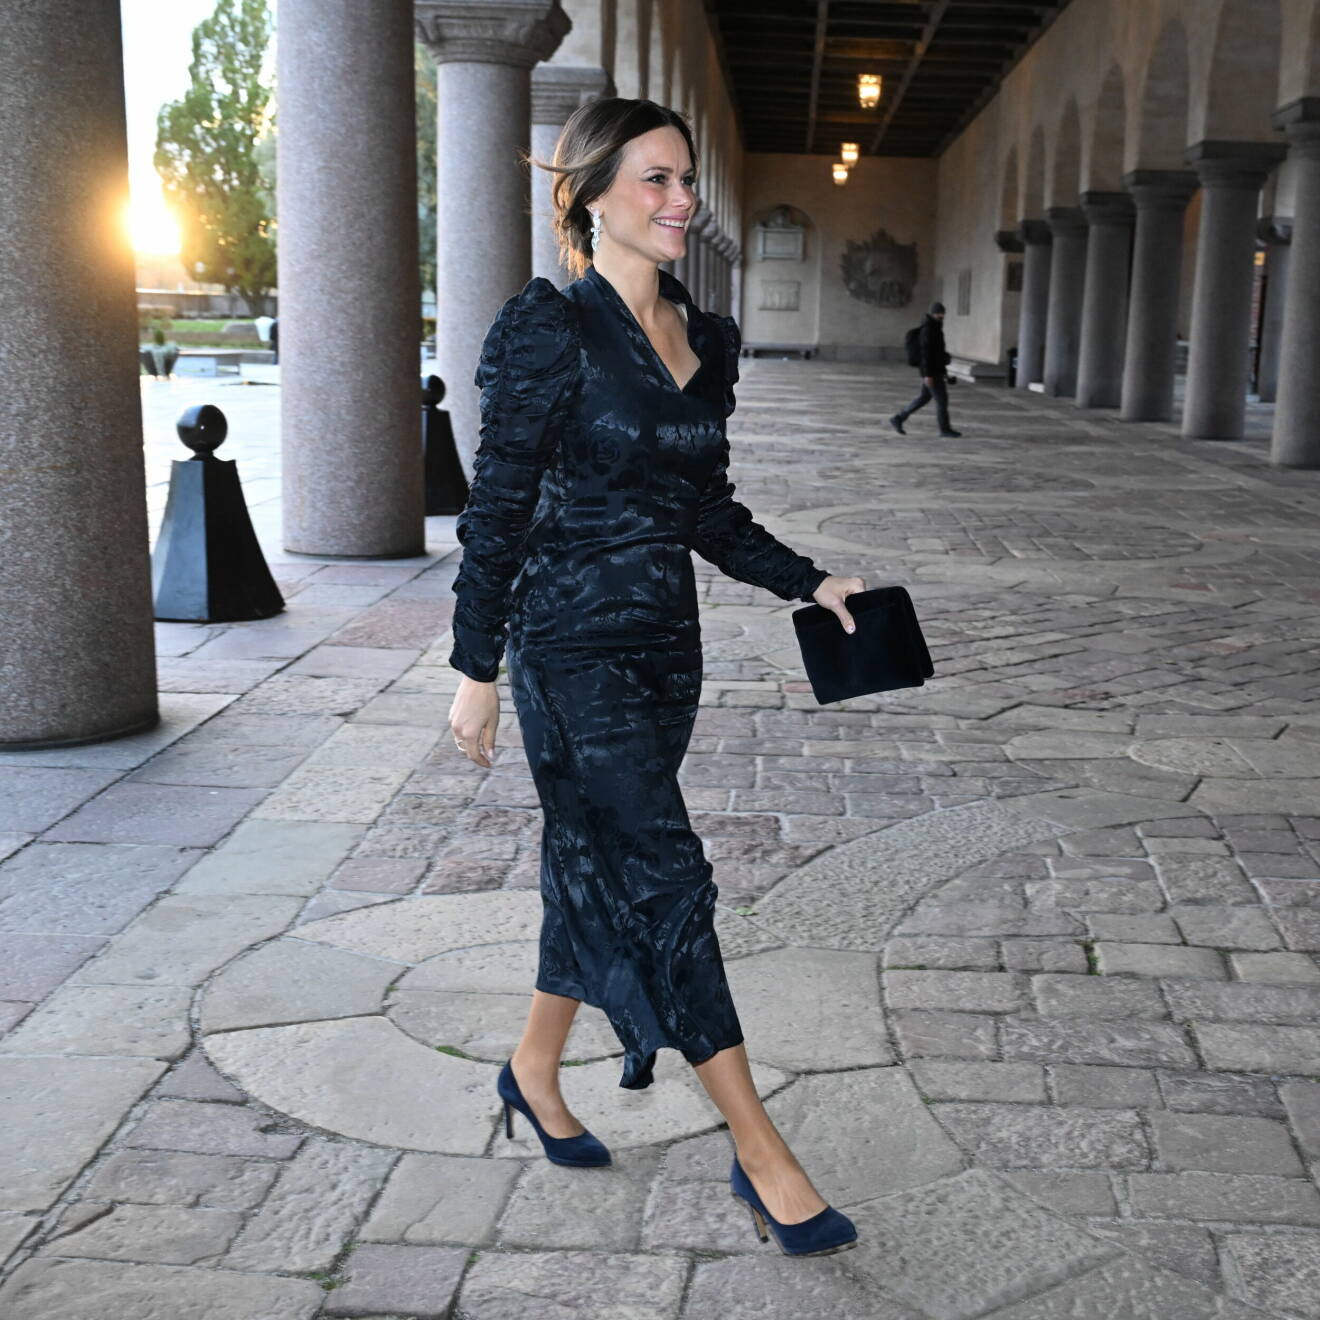 Prinsessan Sofia i en svart eller midnattsblå klänning med draperingar